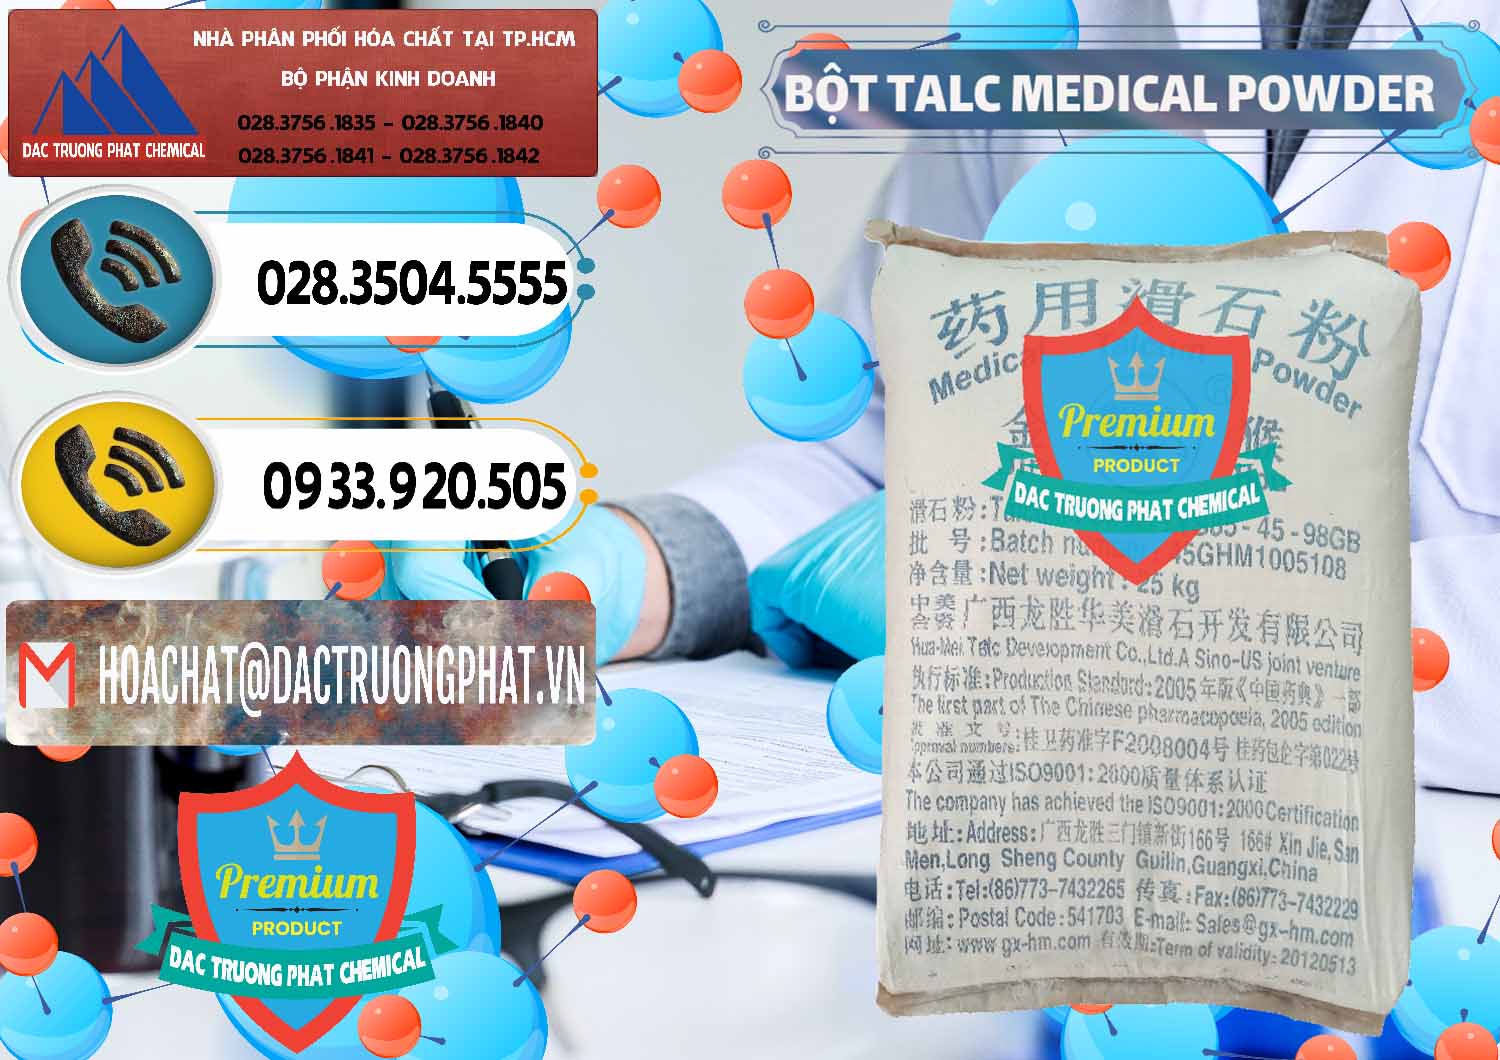 Đơn vị nhập khẩu ( bán ) Bột Talc Medical Powder Trung Quốc China - 0036 - Công ty chuyên phân phối _ nhập khẩu hóa chất tại TP.HCM - hoachatdetnhuom.vn